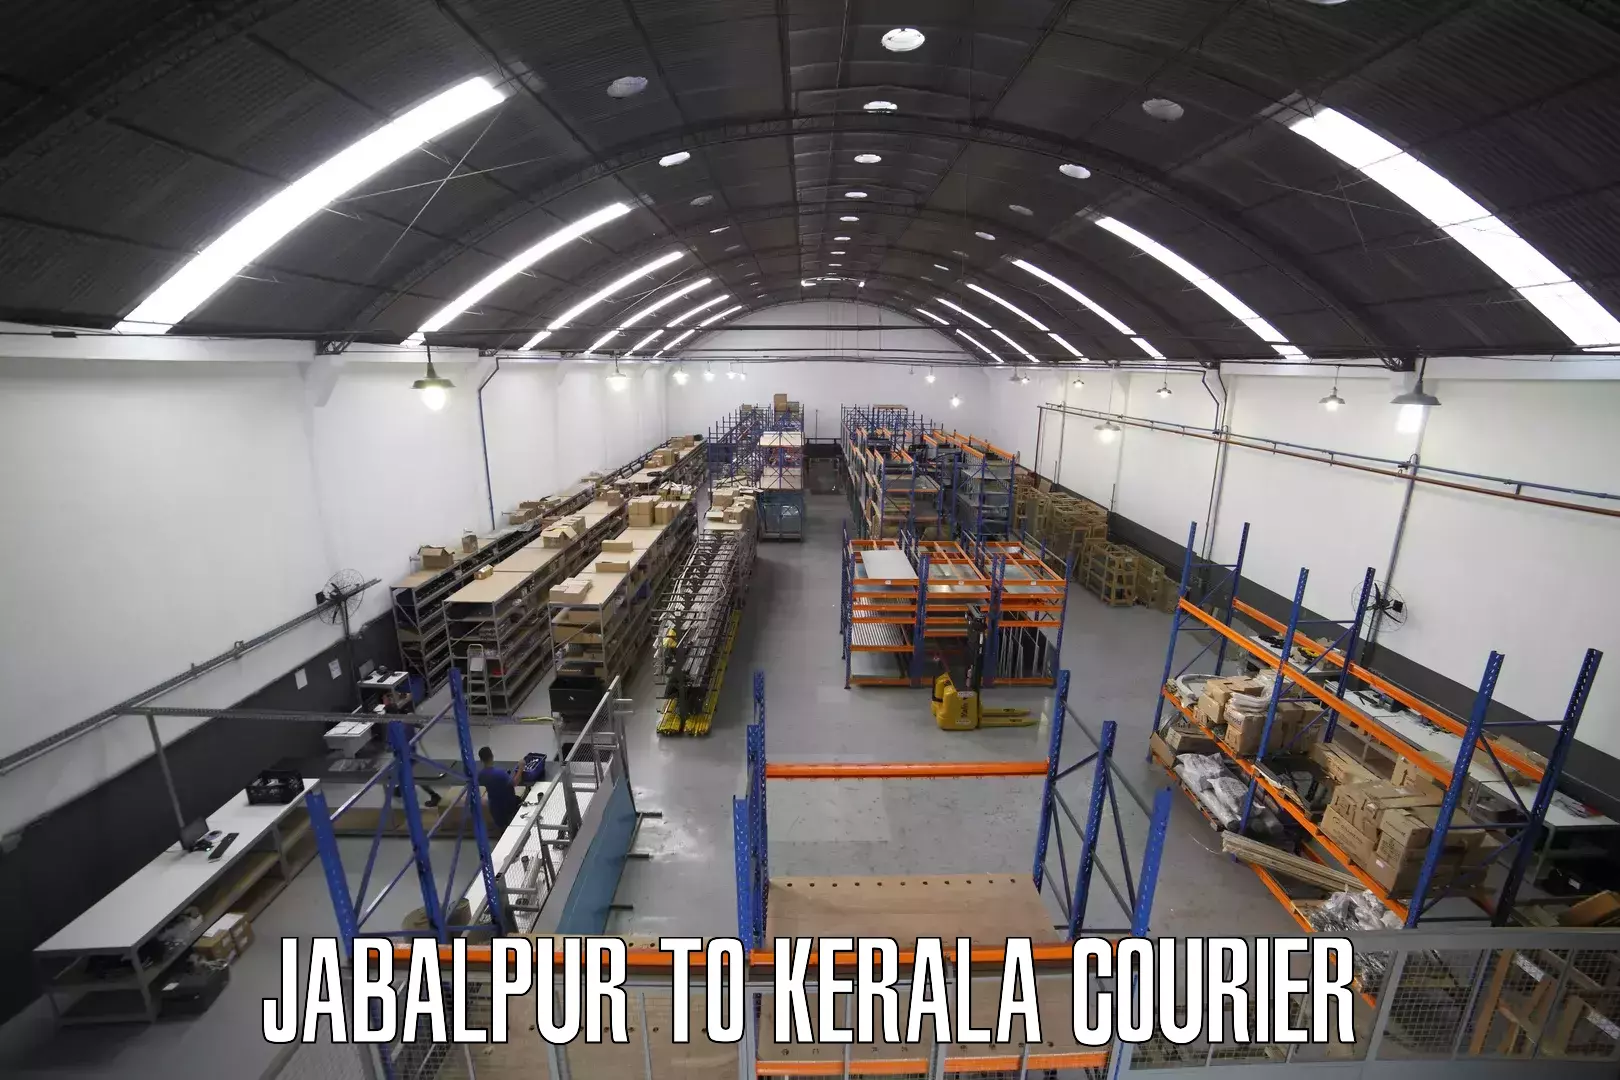 Quality courier partnerships Jabalpur to Guruvayoor